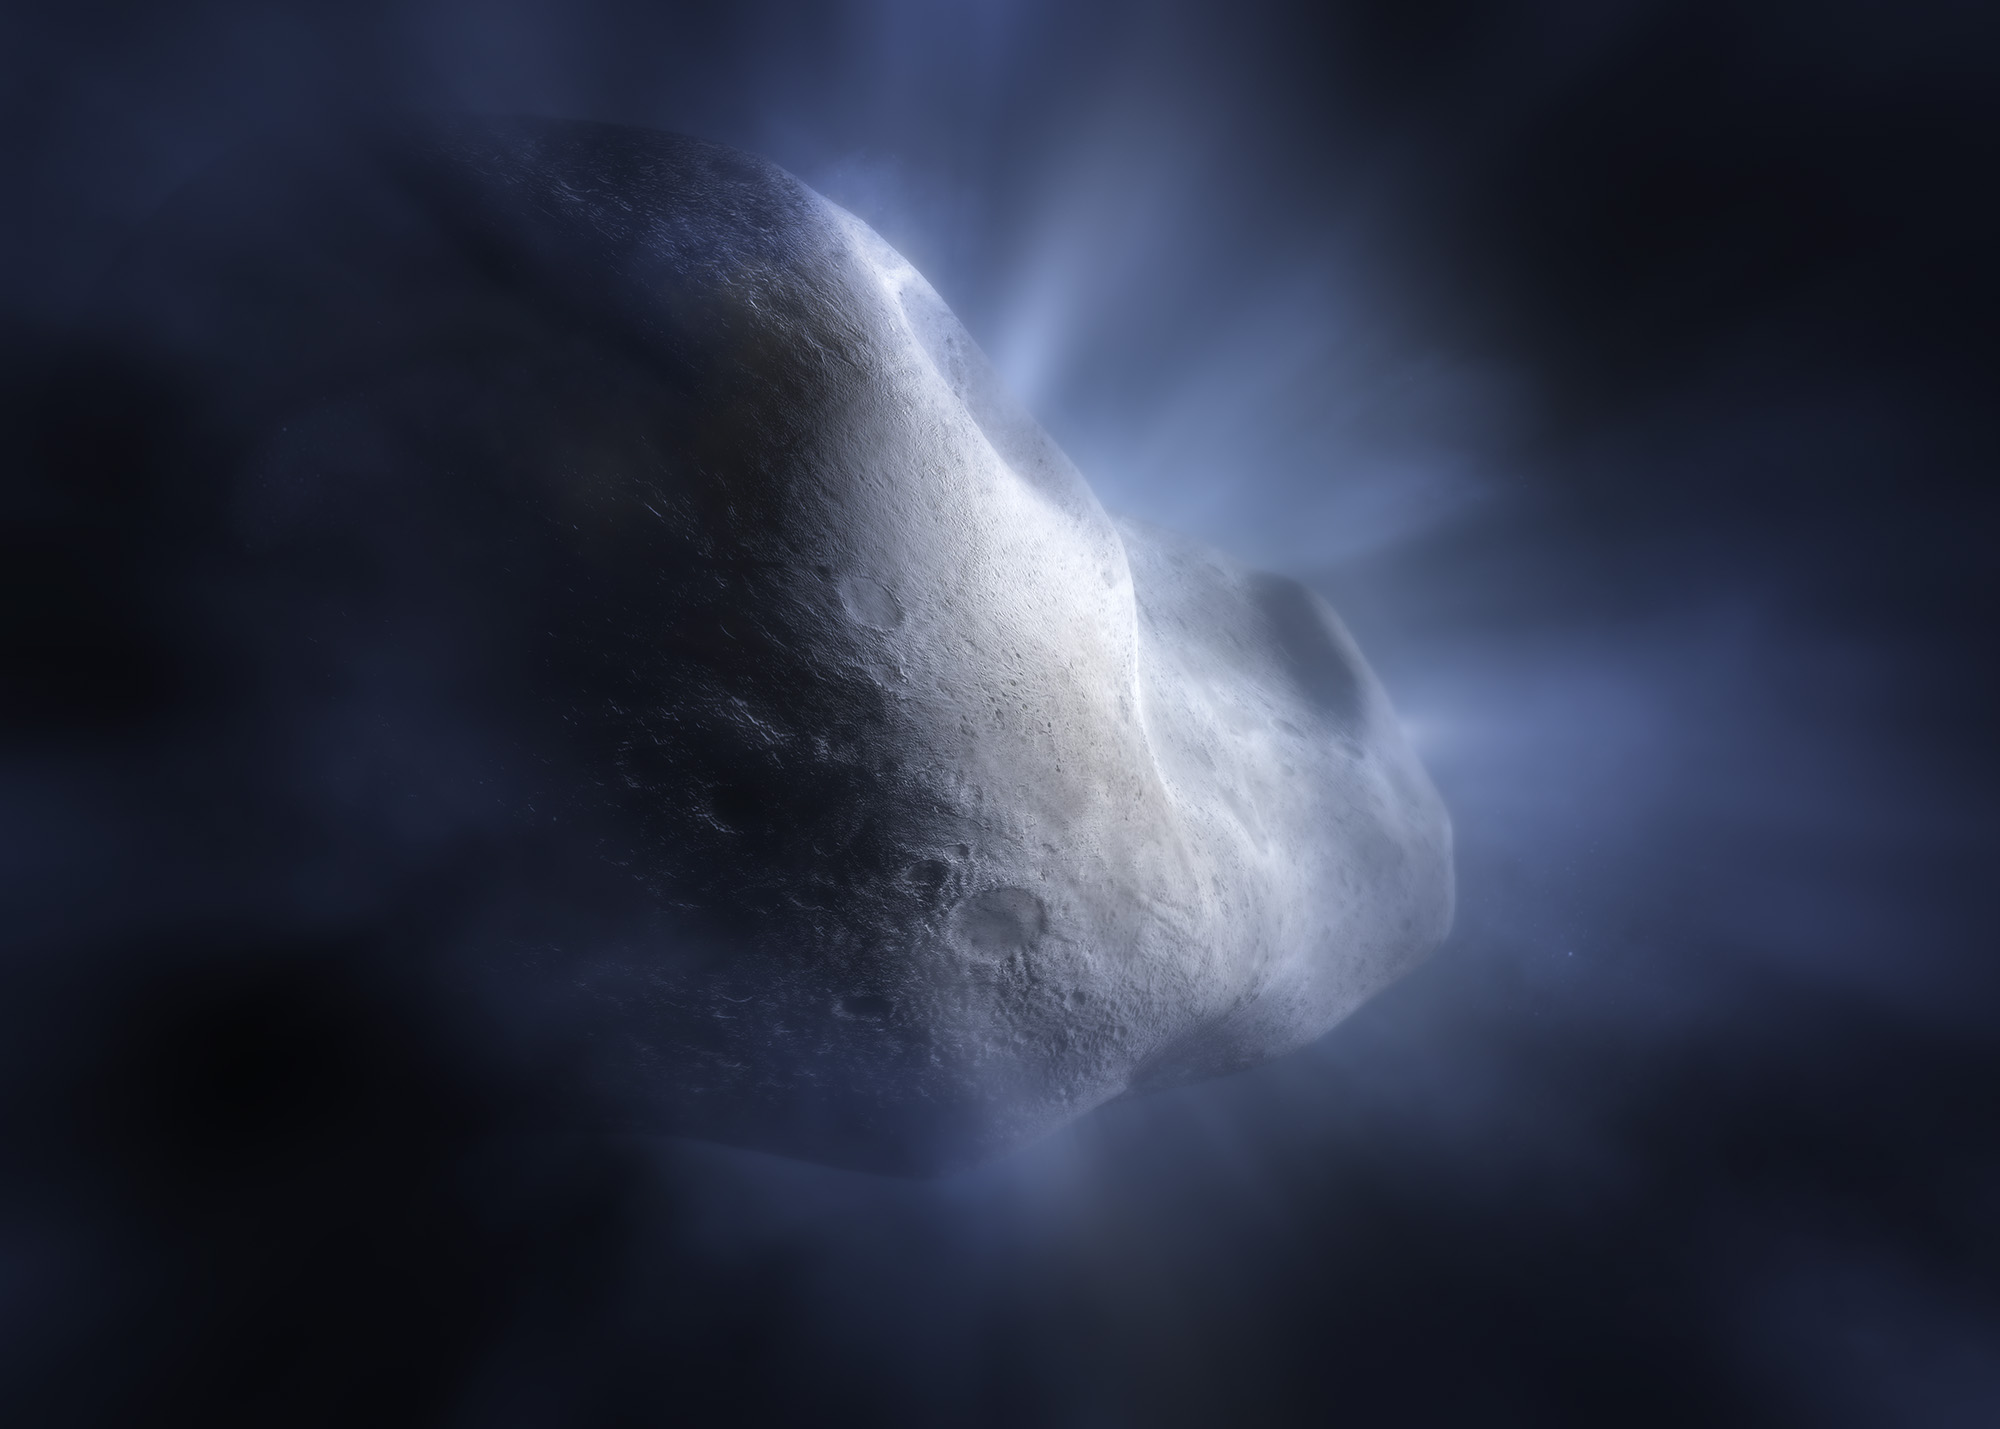 Esta ilustración del cometa 238P/Read muestra el cometa del cinturón principal sublimándose: su hielo de agua se vaporiza a medida que su órbita se acerca al Sol. Esto es significativo, ya que la sublimación es lo que distingue a los cometas de los asteroides, creando su cola distintiva y halo nebuloso, o coma. Es especialmente importante para el cometa Read, ya que es uno de los 16 cometas identificados del cinturón principal que se encuentran en el cinturón de asteroides, a diferencia del más frío Cinturón de Kuiper o la Nube de Oort, más distantes del Sol. El cometa Read fue uno de los tres cometas utilizados para definir la clase de cometas del cinturón principal en 2006.